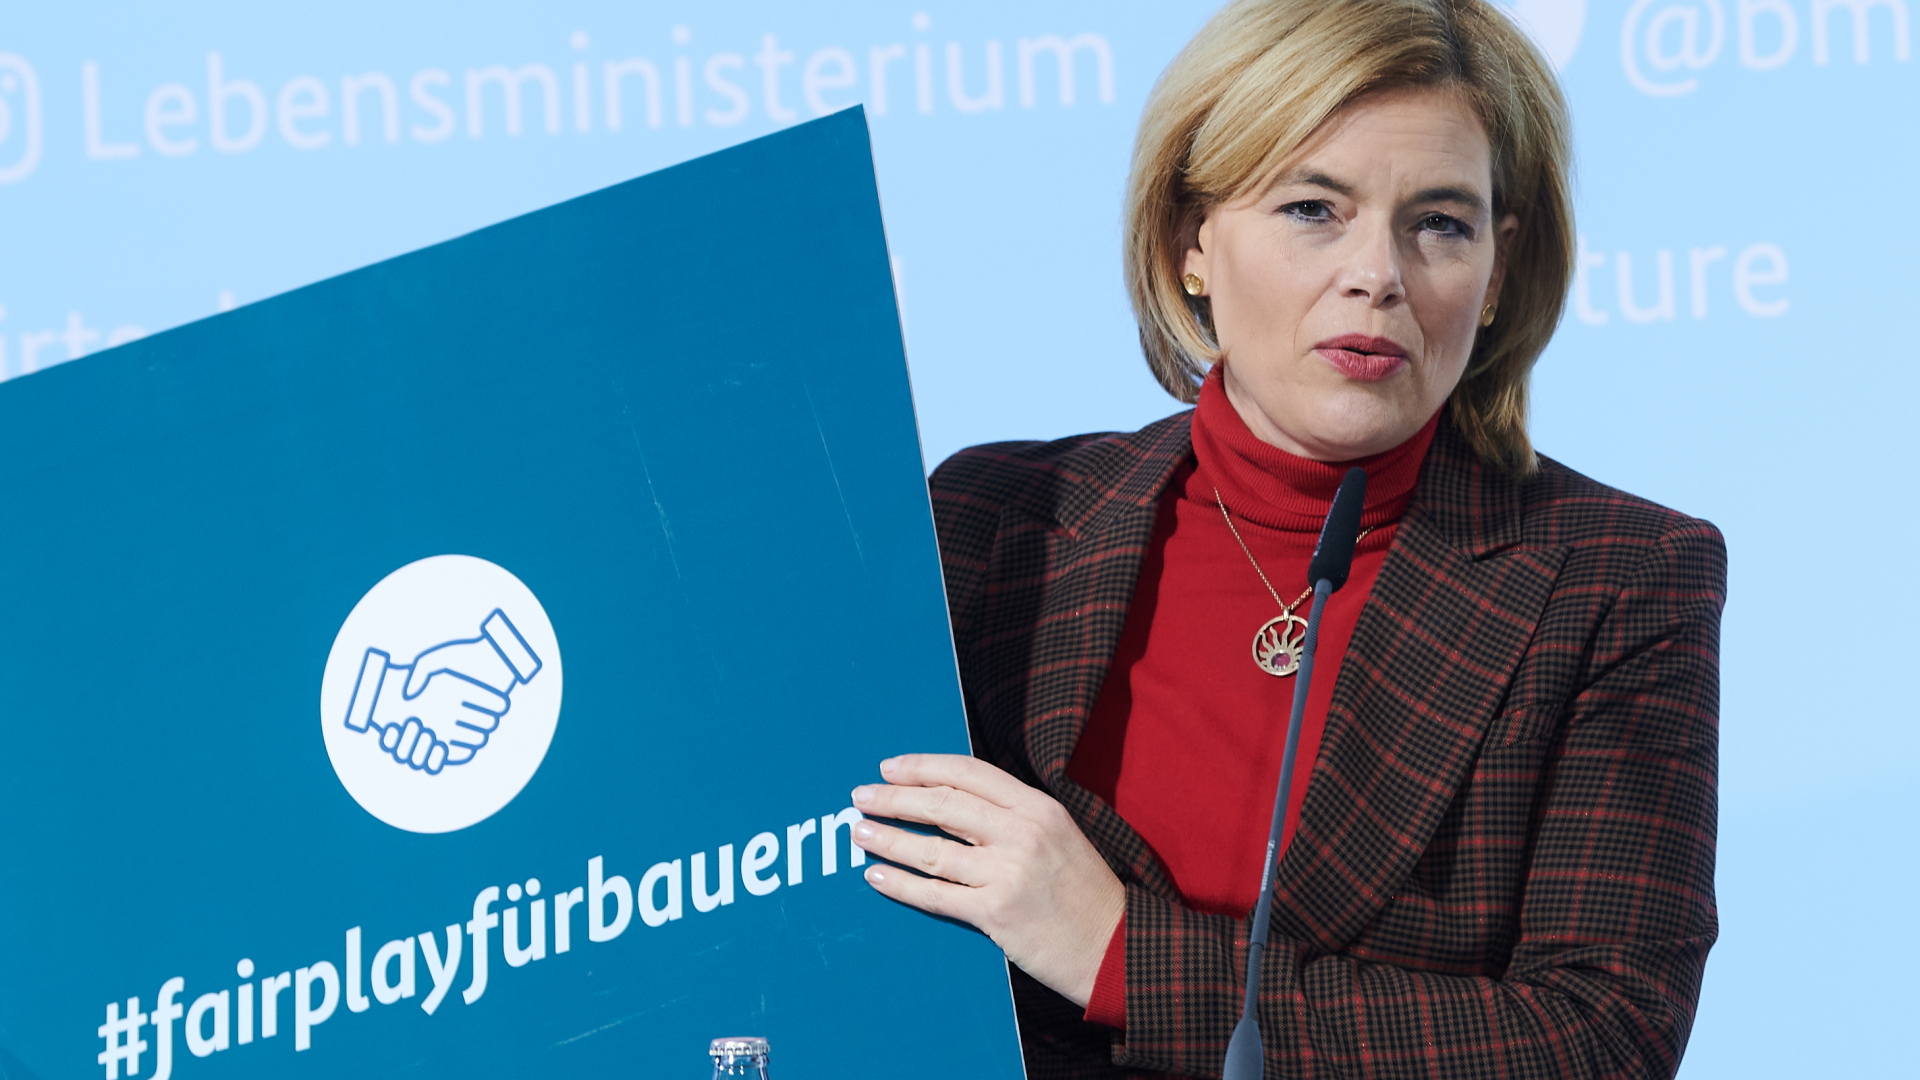 Bundeslandwirtschaftsministerin Julia Klöckner präsentiert ein Schild mit der Aufschrift "#fairplayfürbauern" während der Vorstellung eines Gesetzentwurfs gegen unfaire Handelspraktiken. | dpa